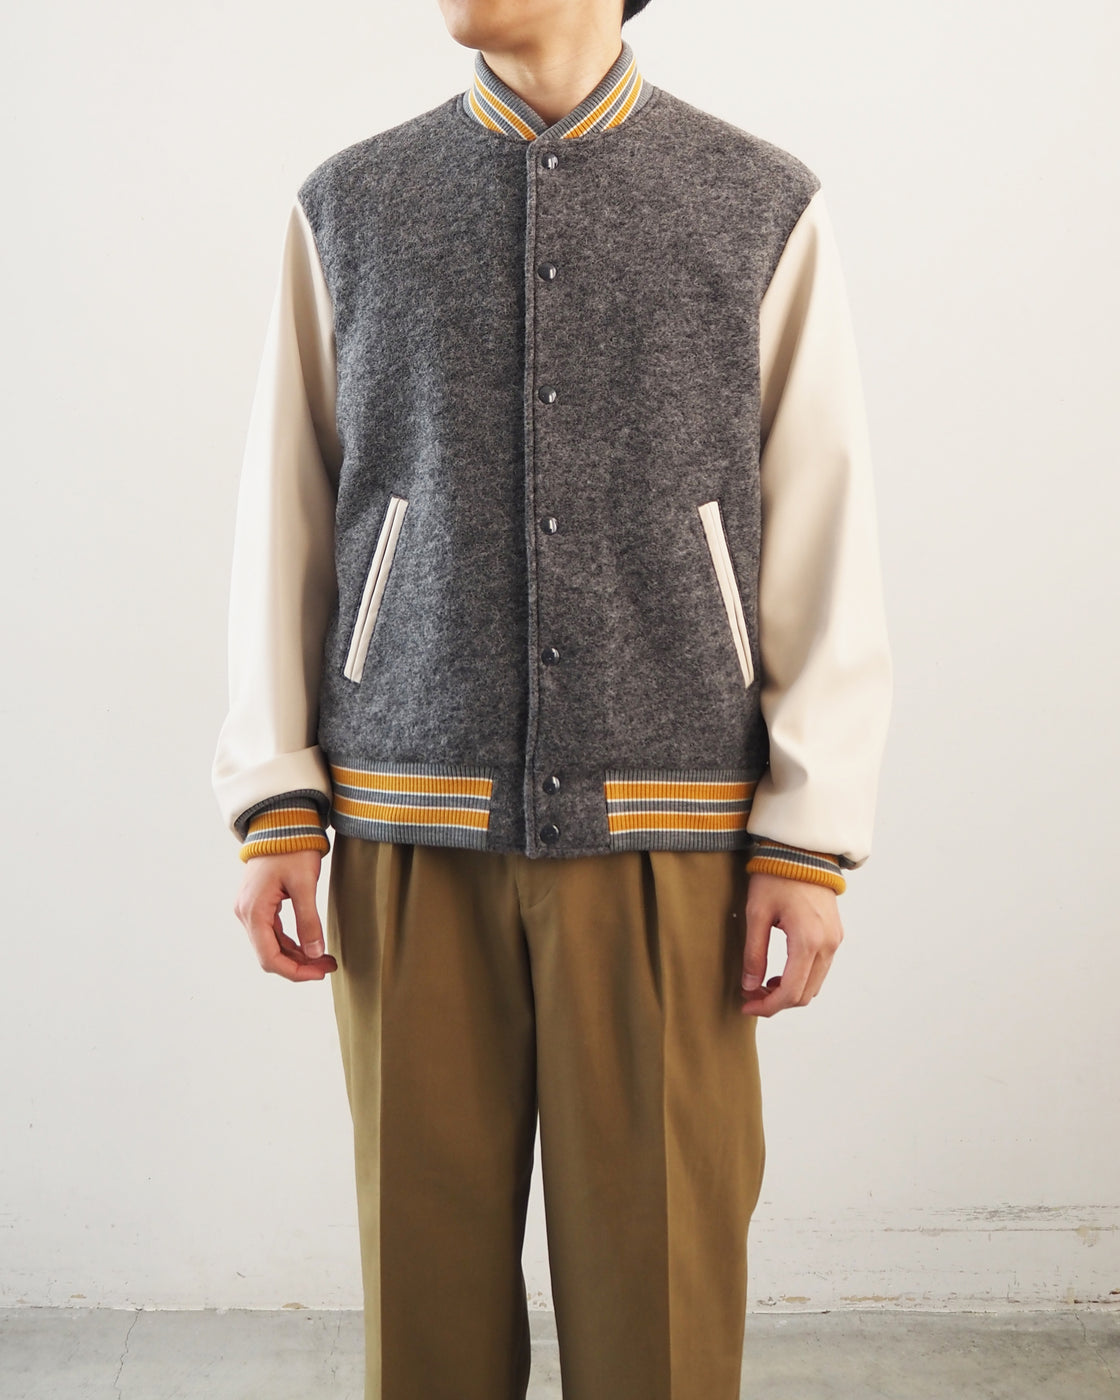 DIGAWEL x URU TOKYO vest サイズ2 / ディガウェル神経質な方にはお勧め致しません